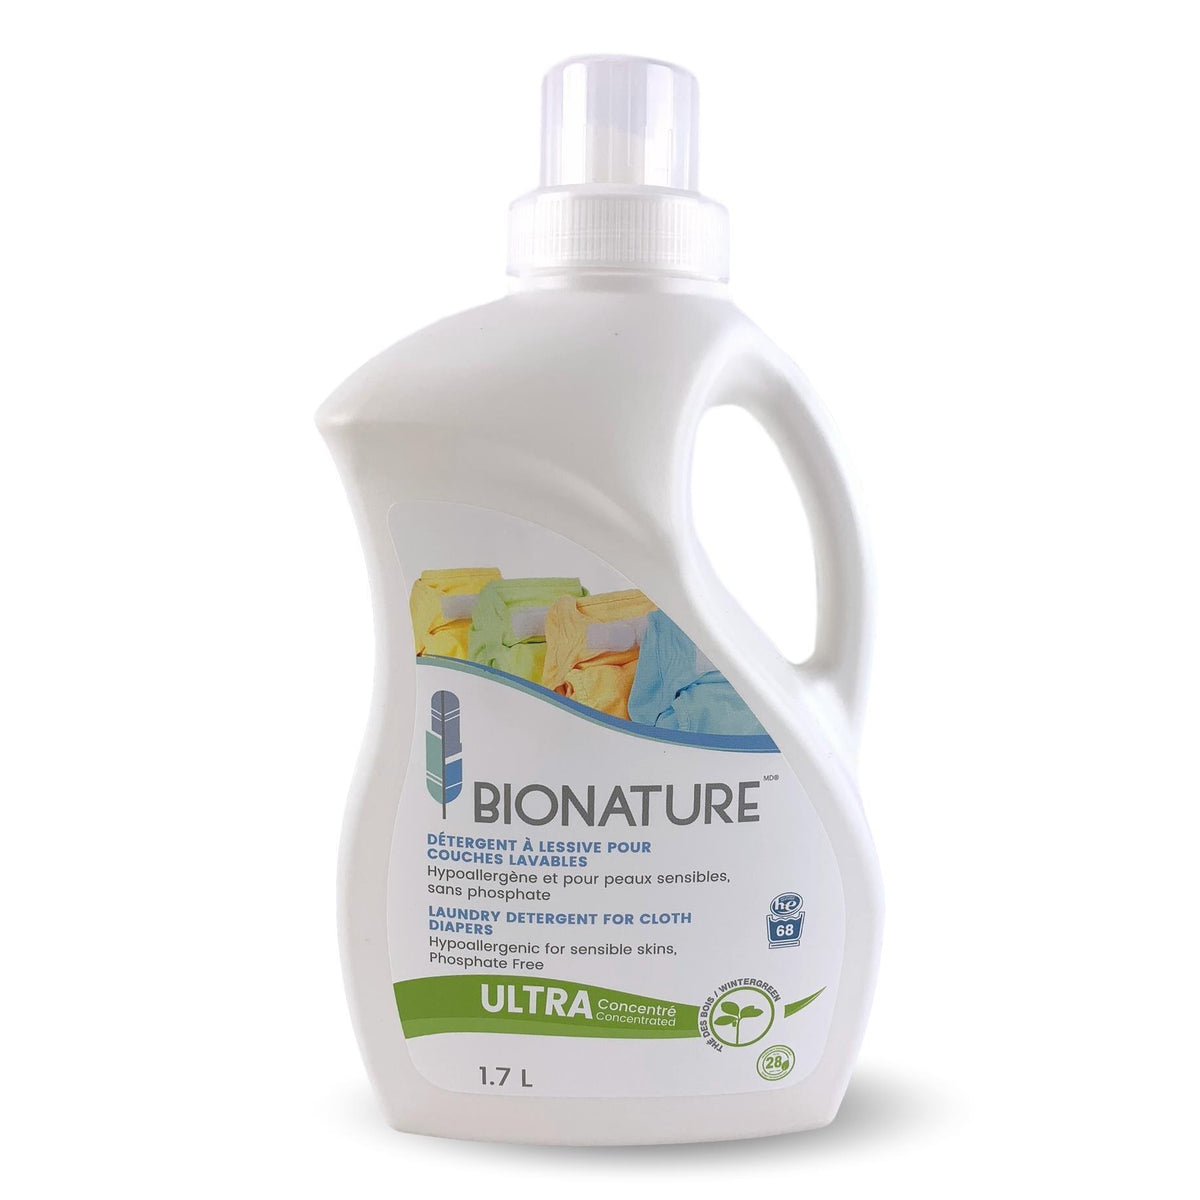 BIONATURE | Détergent à lessive pour couches lavables* - BIONATURE